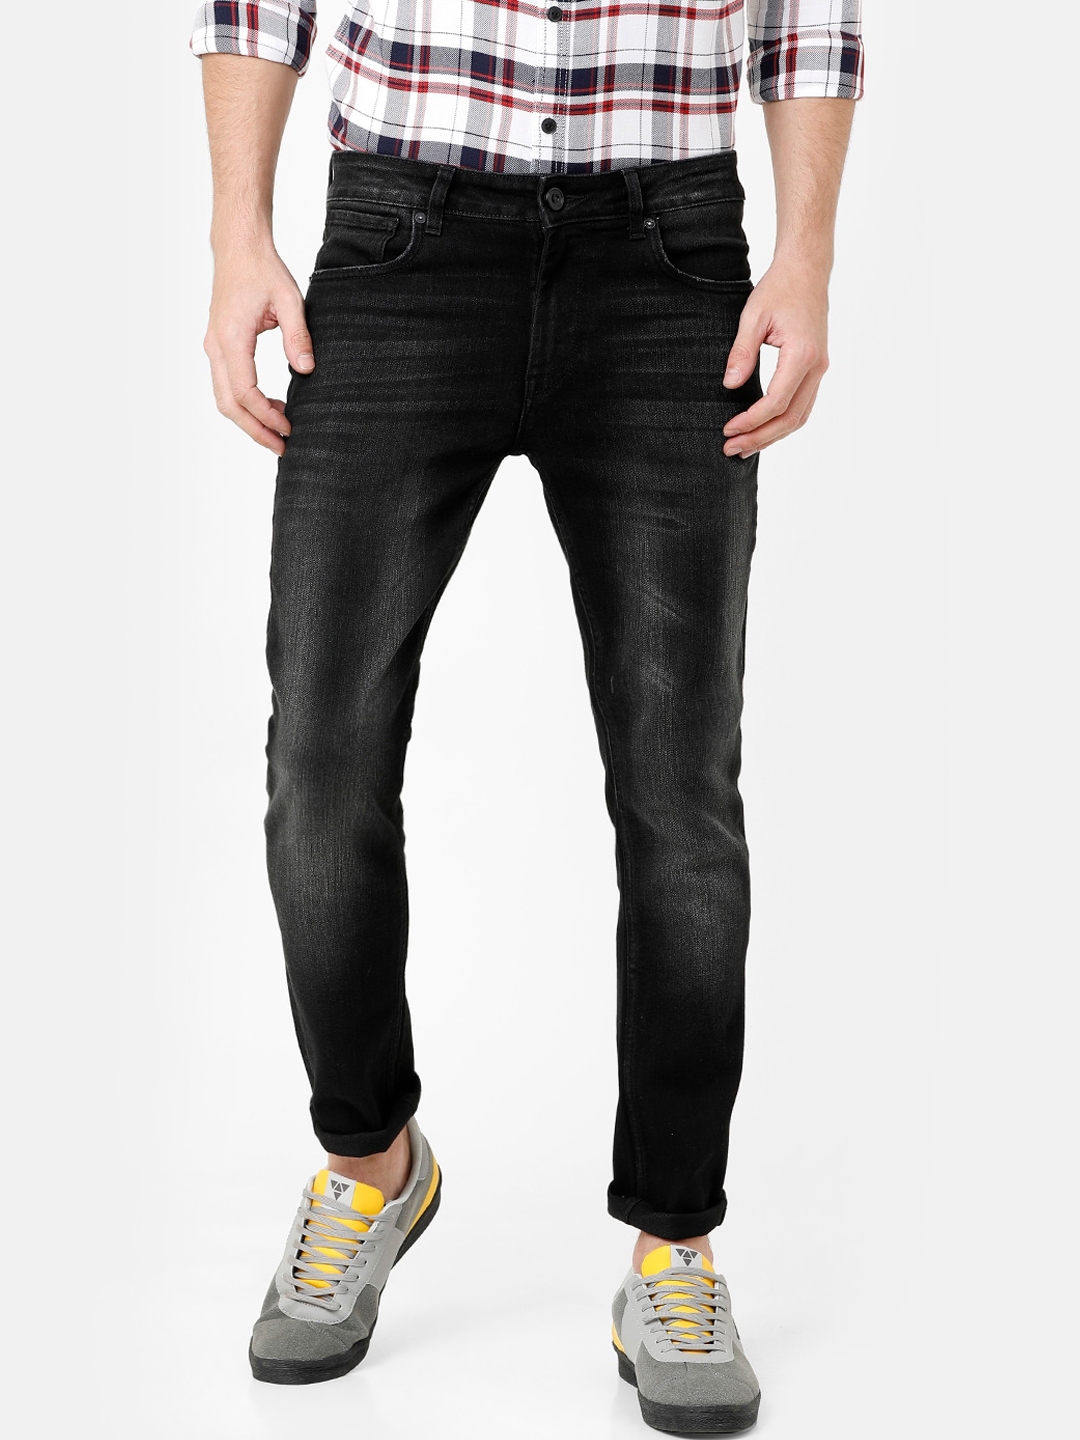 Buy Voi Jeans Men Black Skinny Fit Mid Rise Clean Look Jeans - Jeans ...